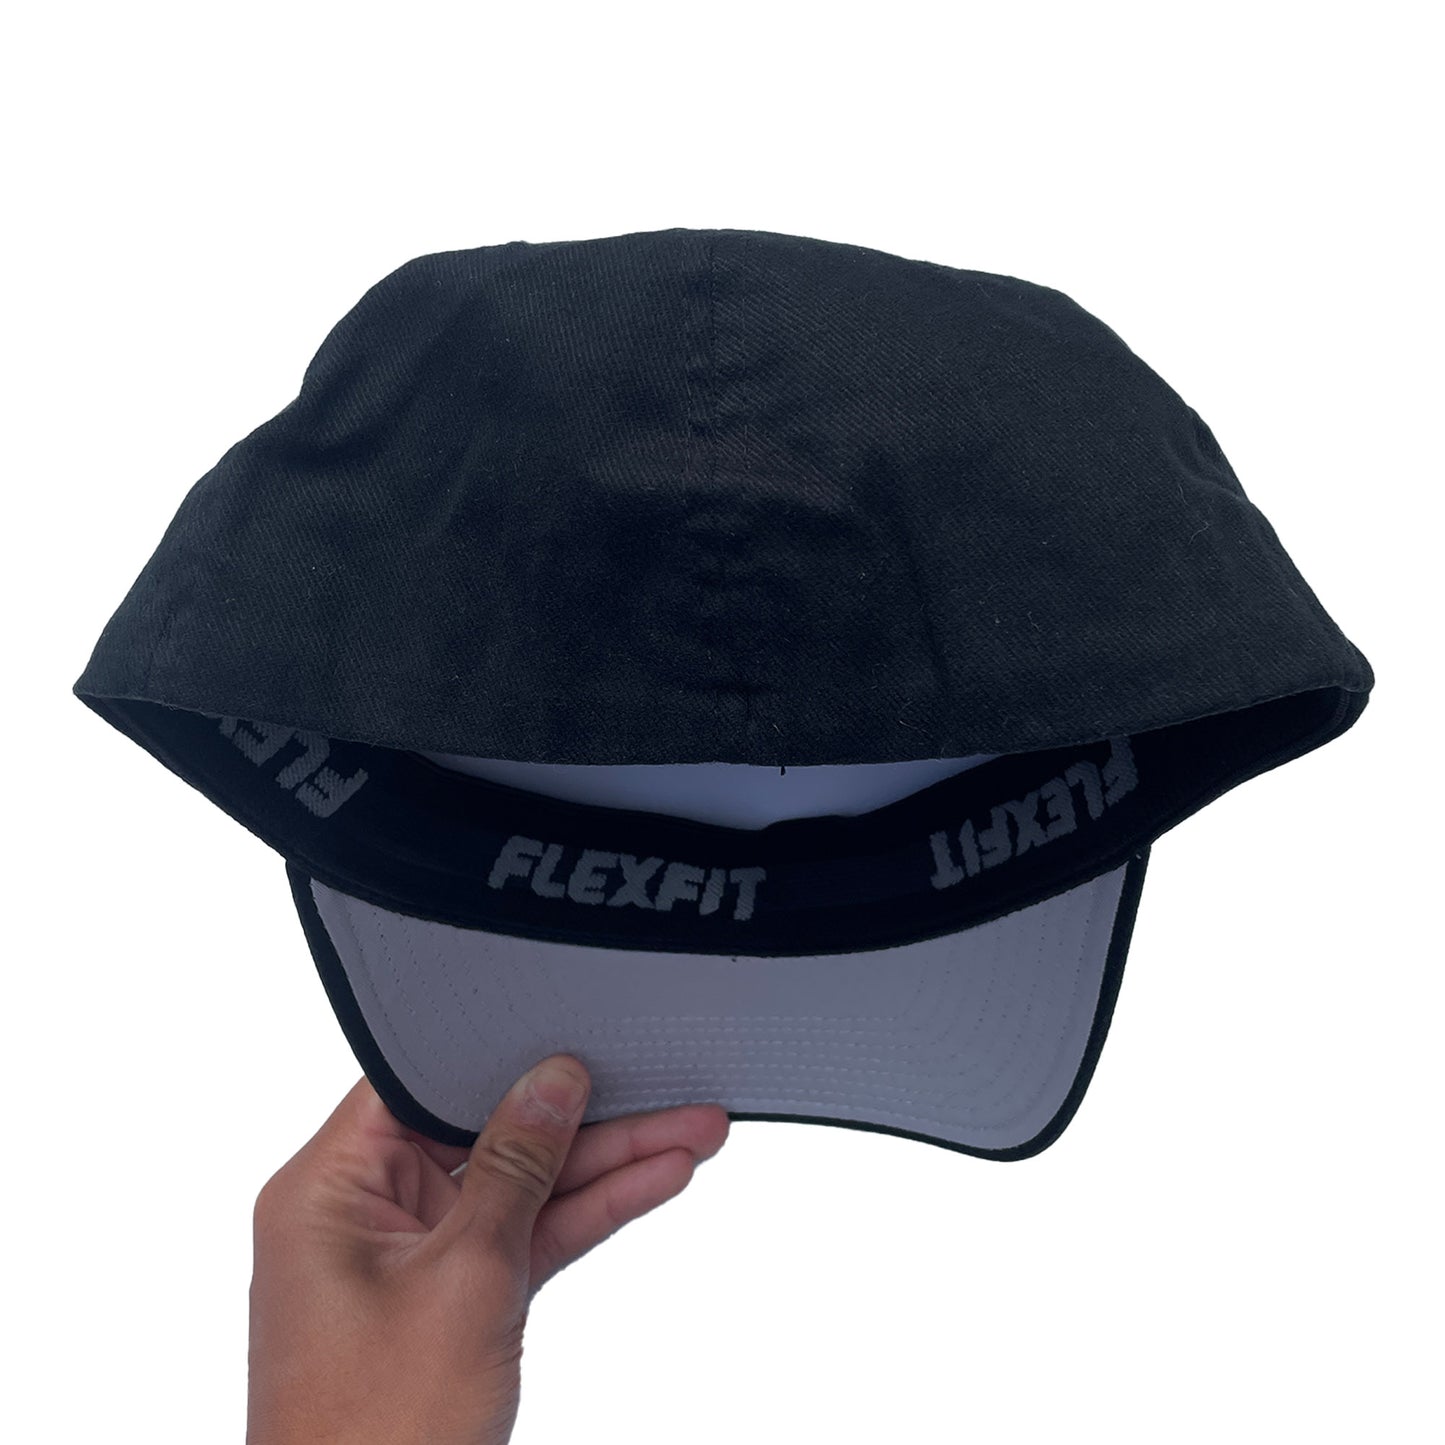 Venture Flex-Fit Cap (Black) VINTAGE 00s